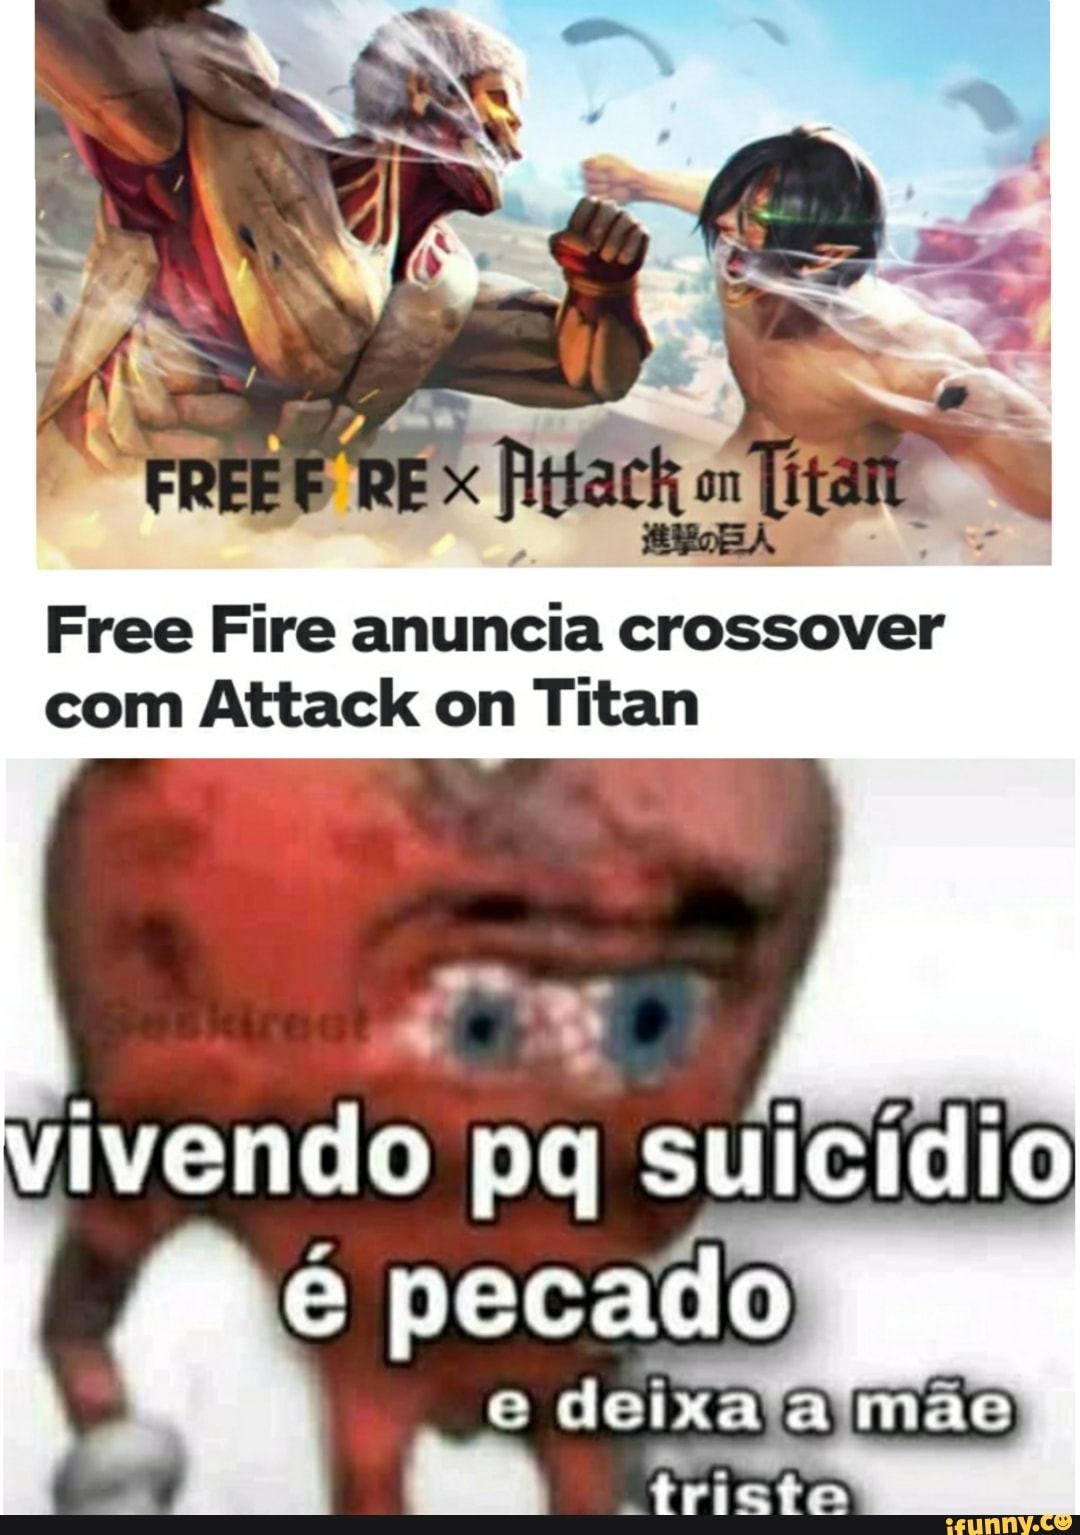 RE Free Fire anuncia crossover com Attack on Titan vivendo pq